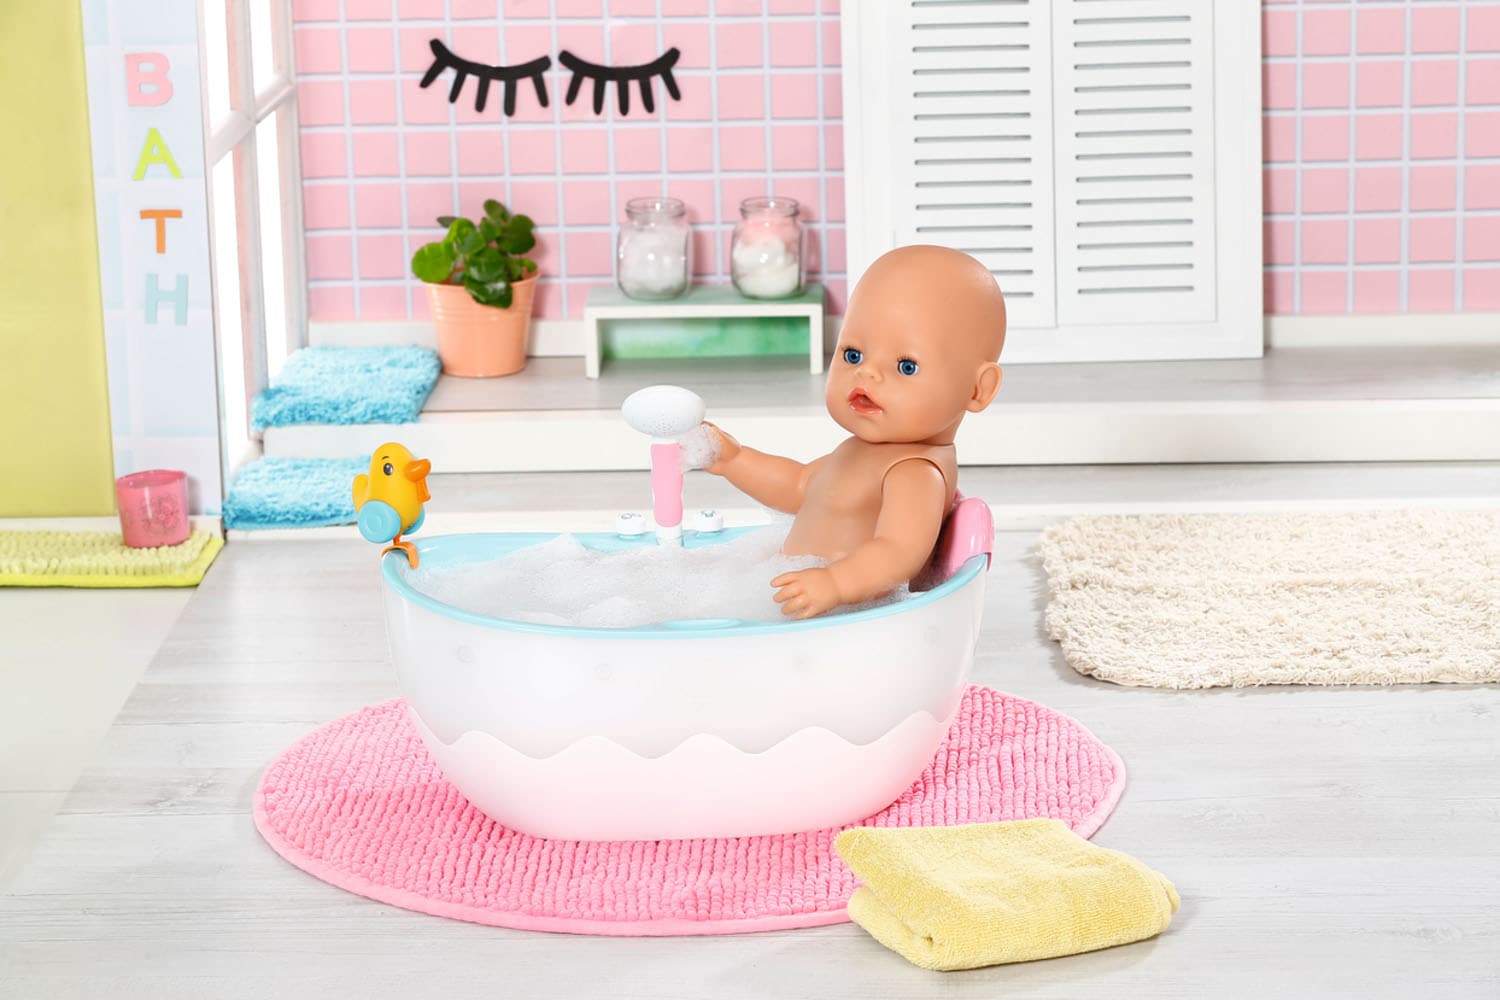 Baby Born Puppen Badewanne »Bath«, mit Licht- und Soundeffekten